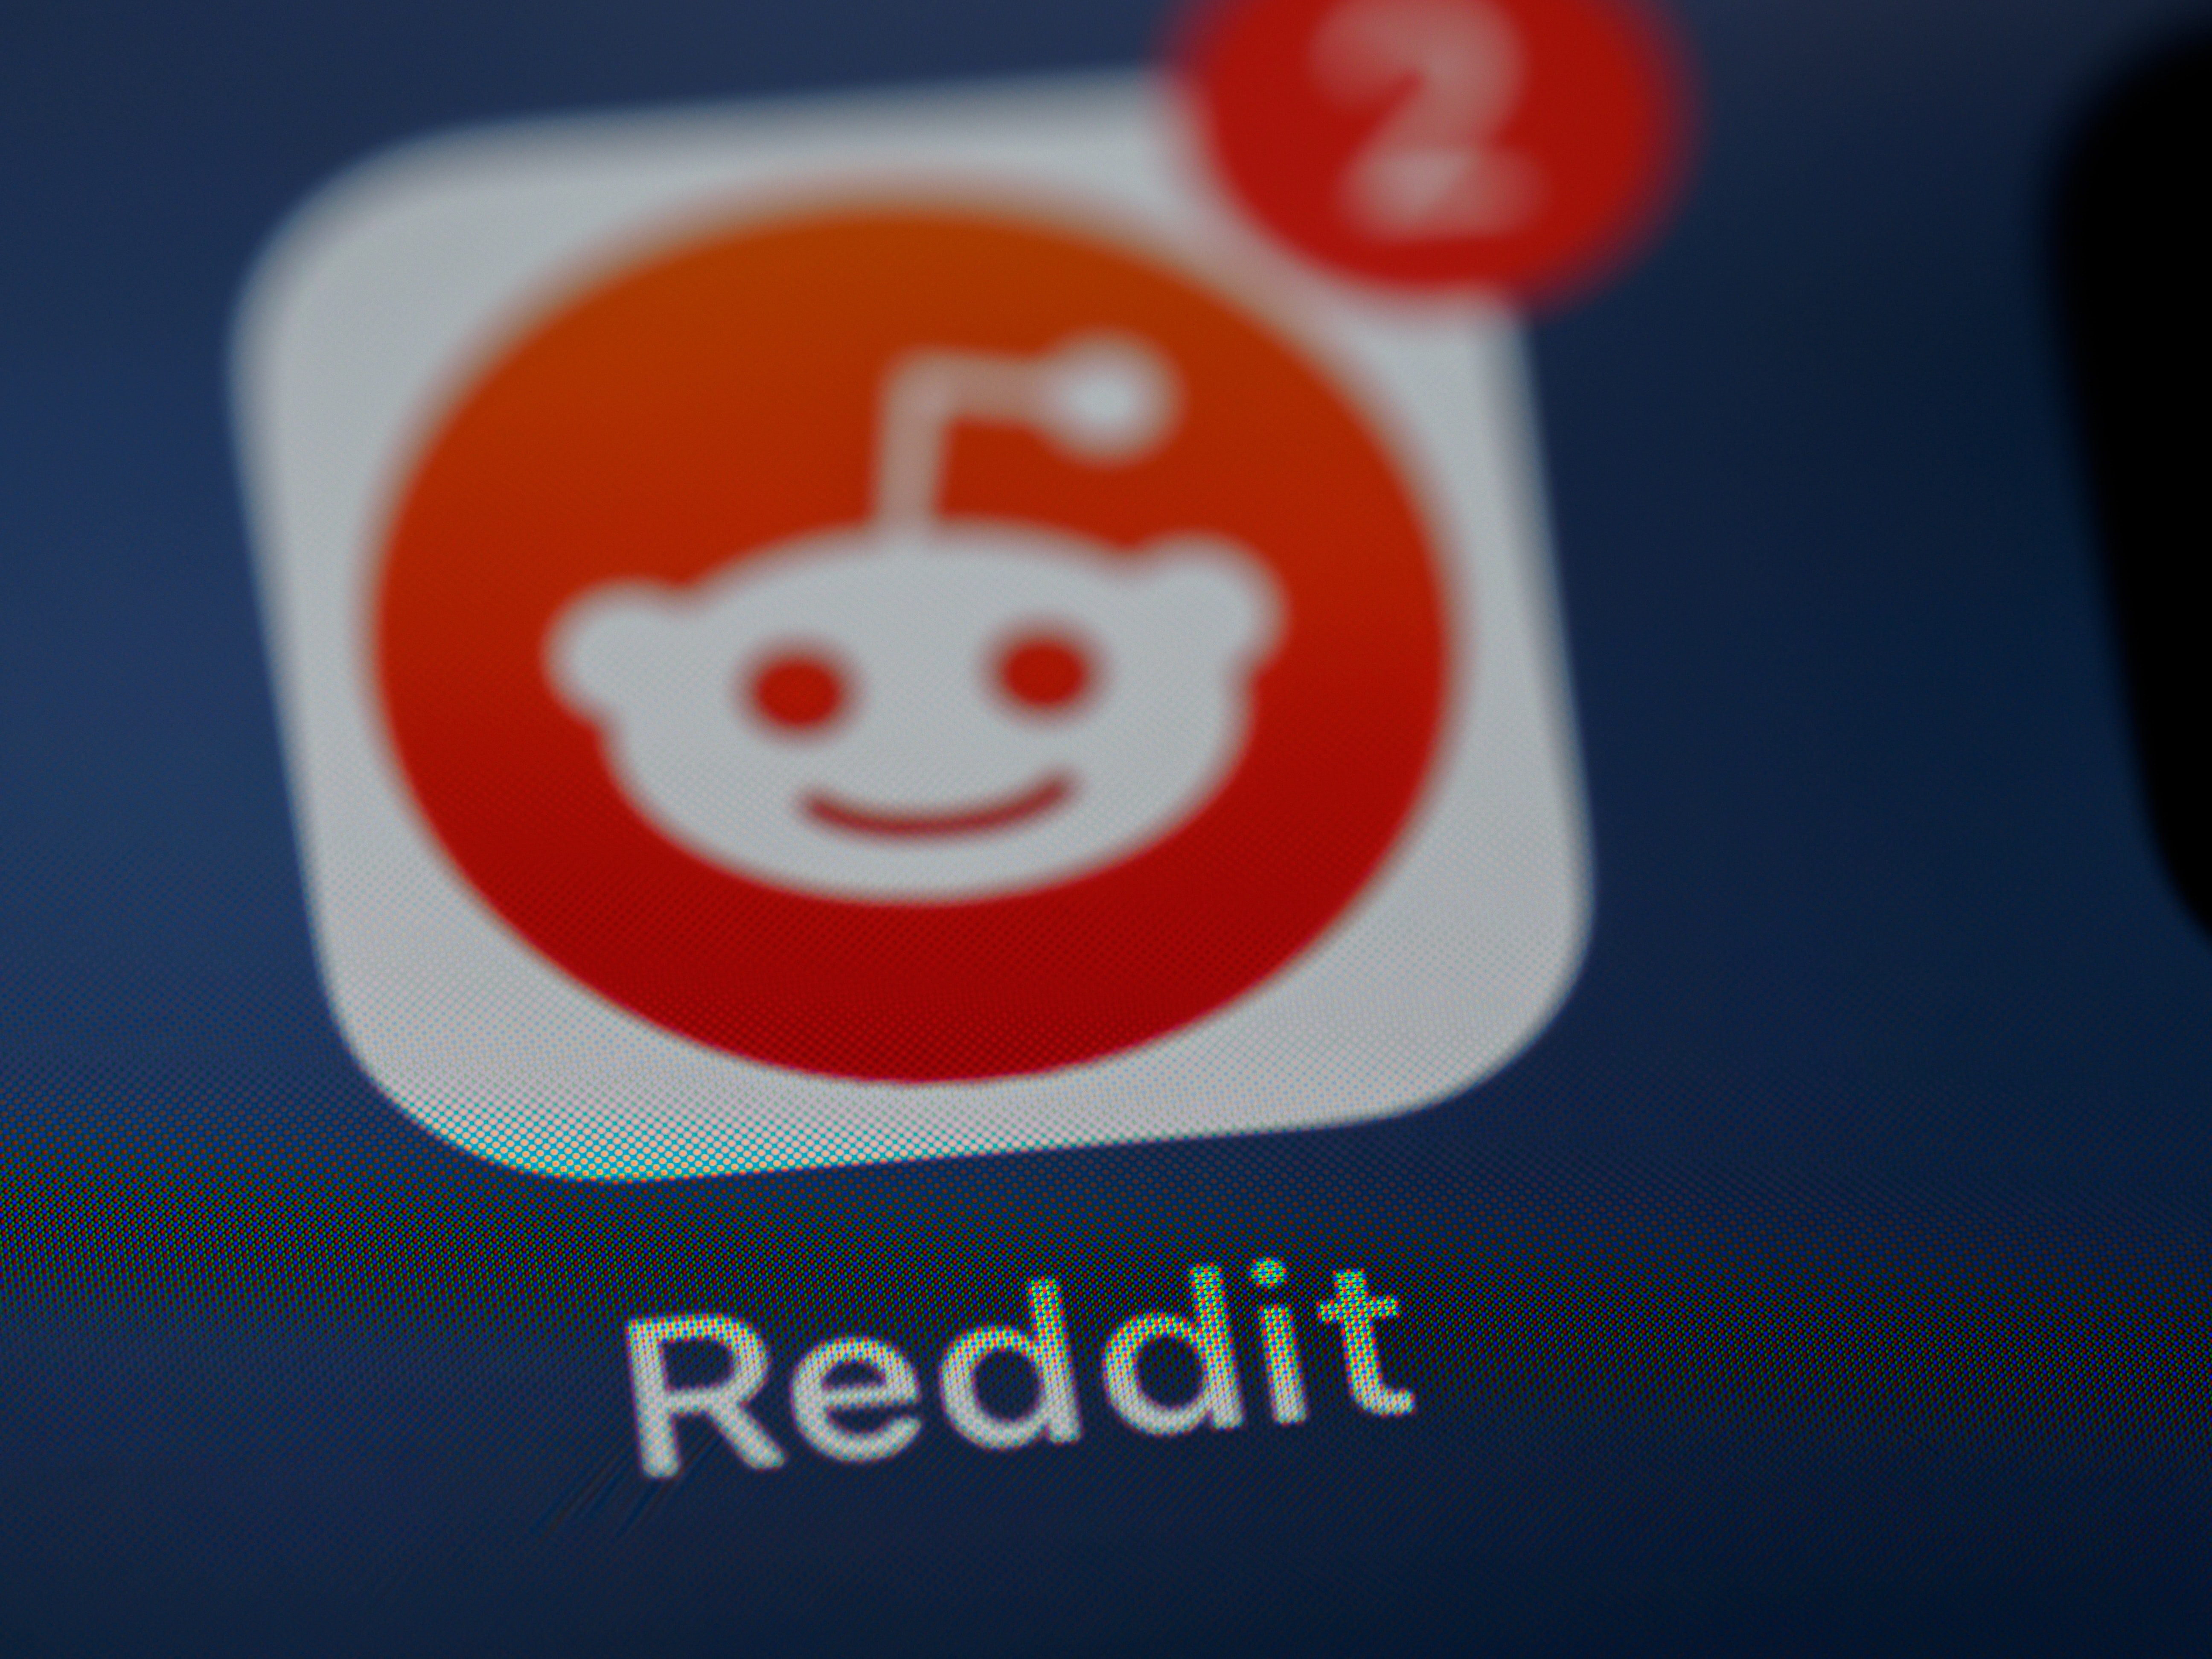 Reddit débarque (vraiment) en France